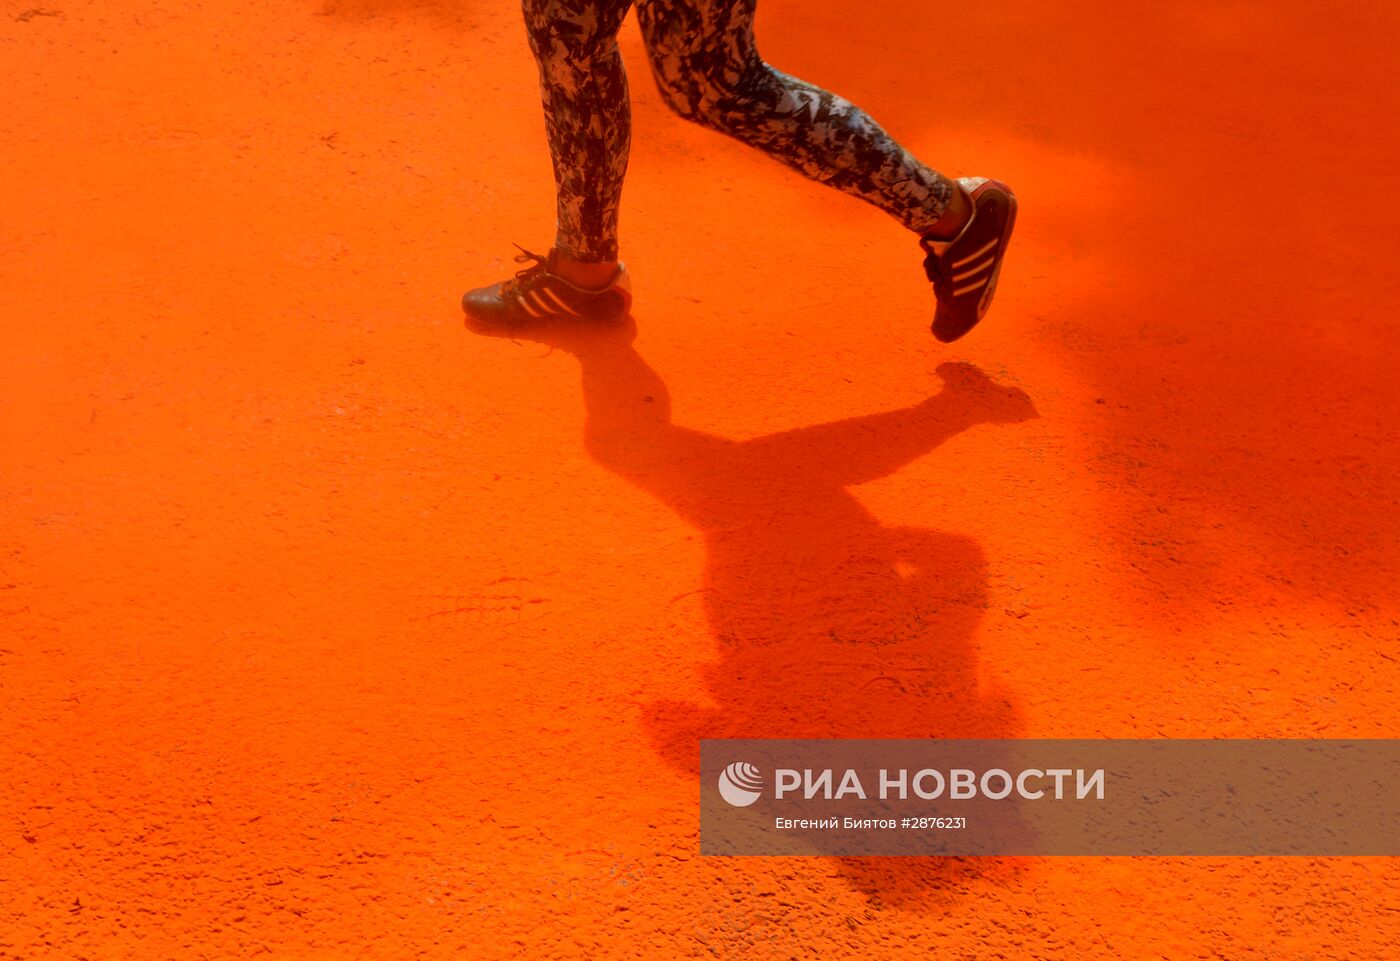 Красочный забег в Москве